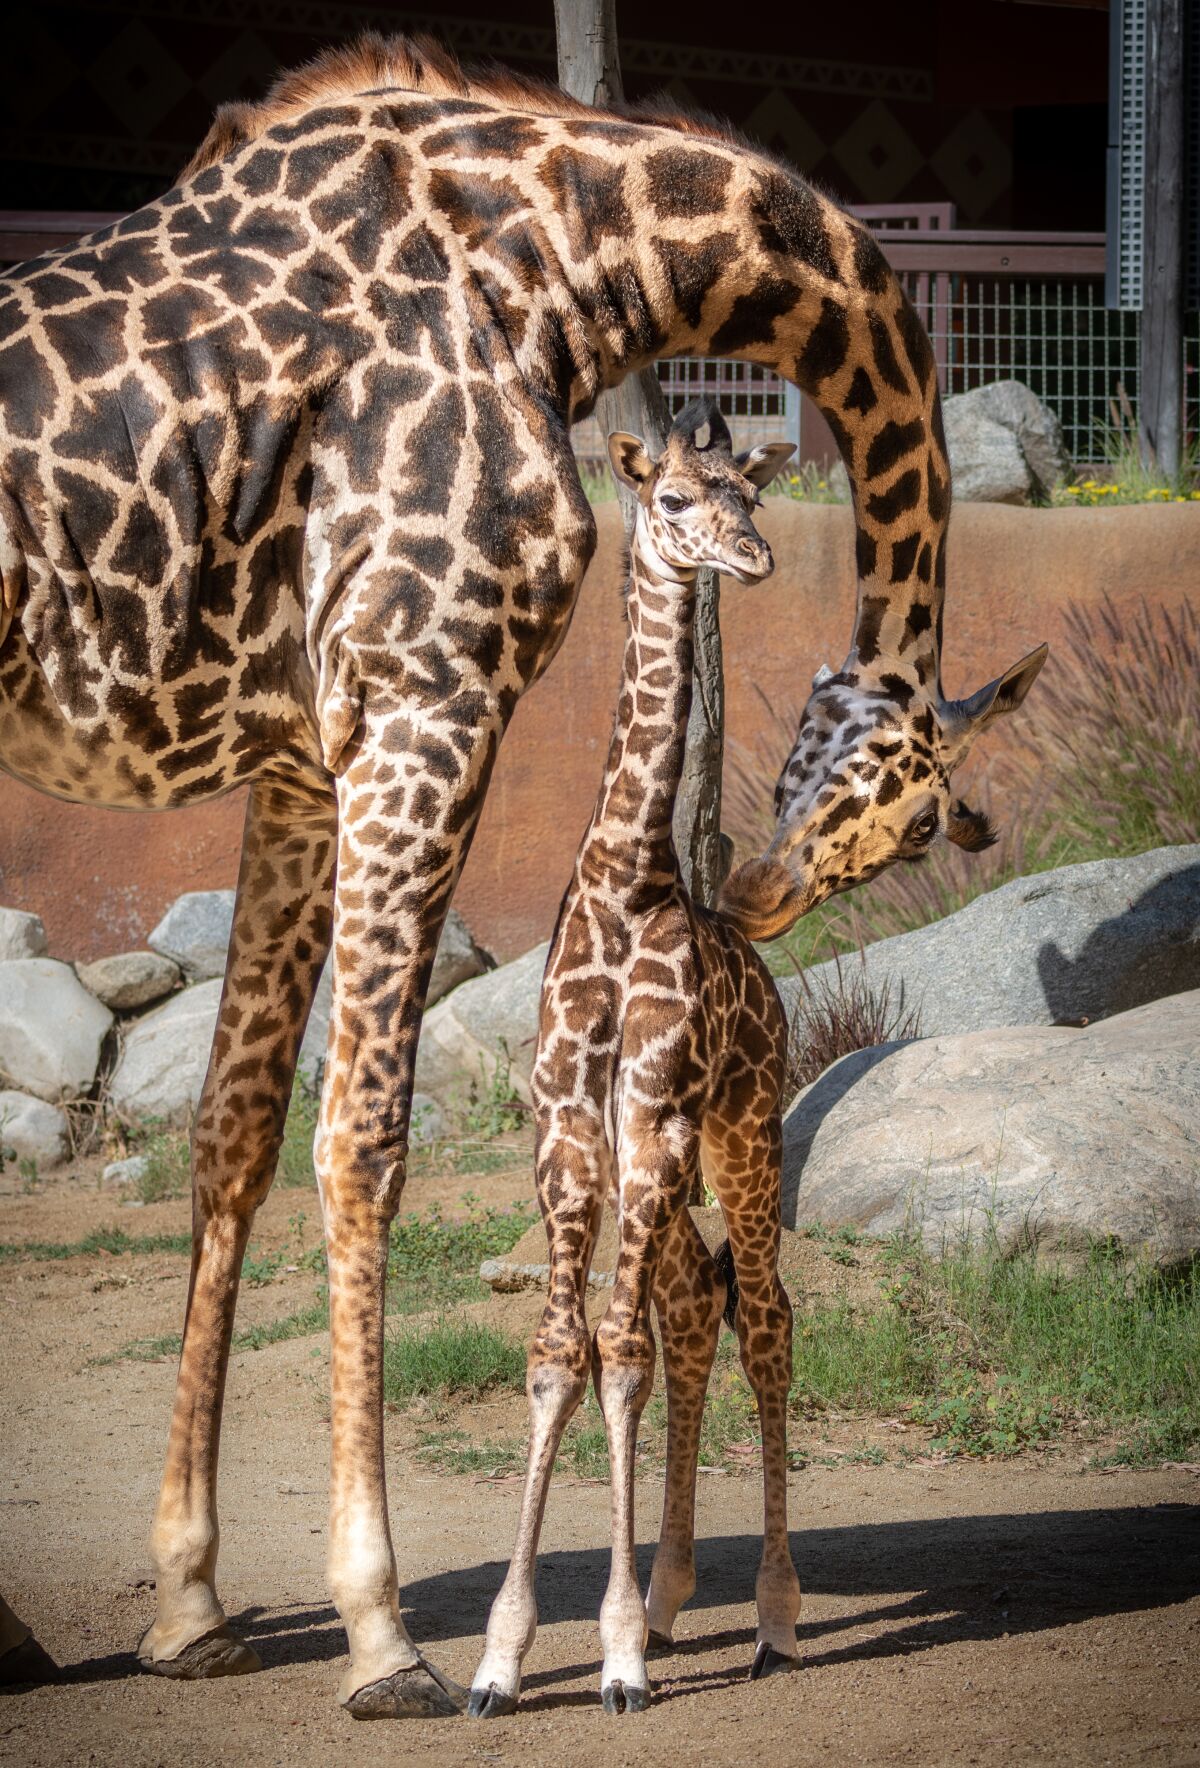 A mother giraffe licks her baby